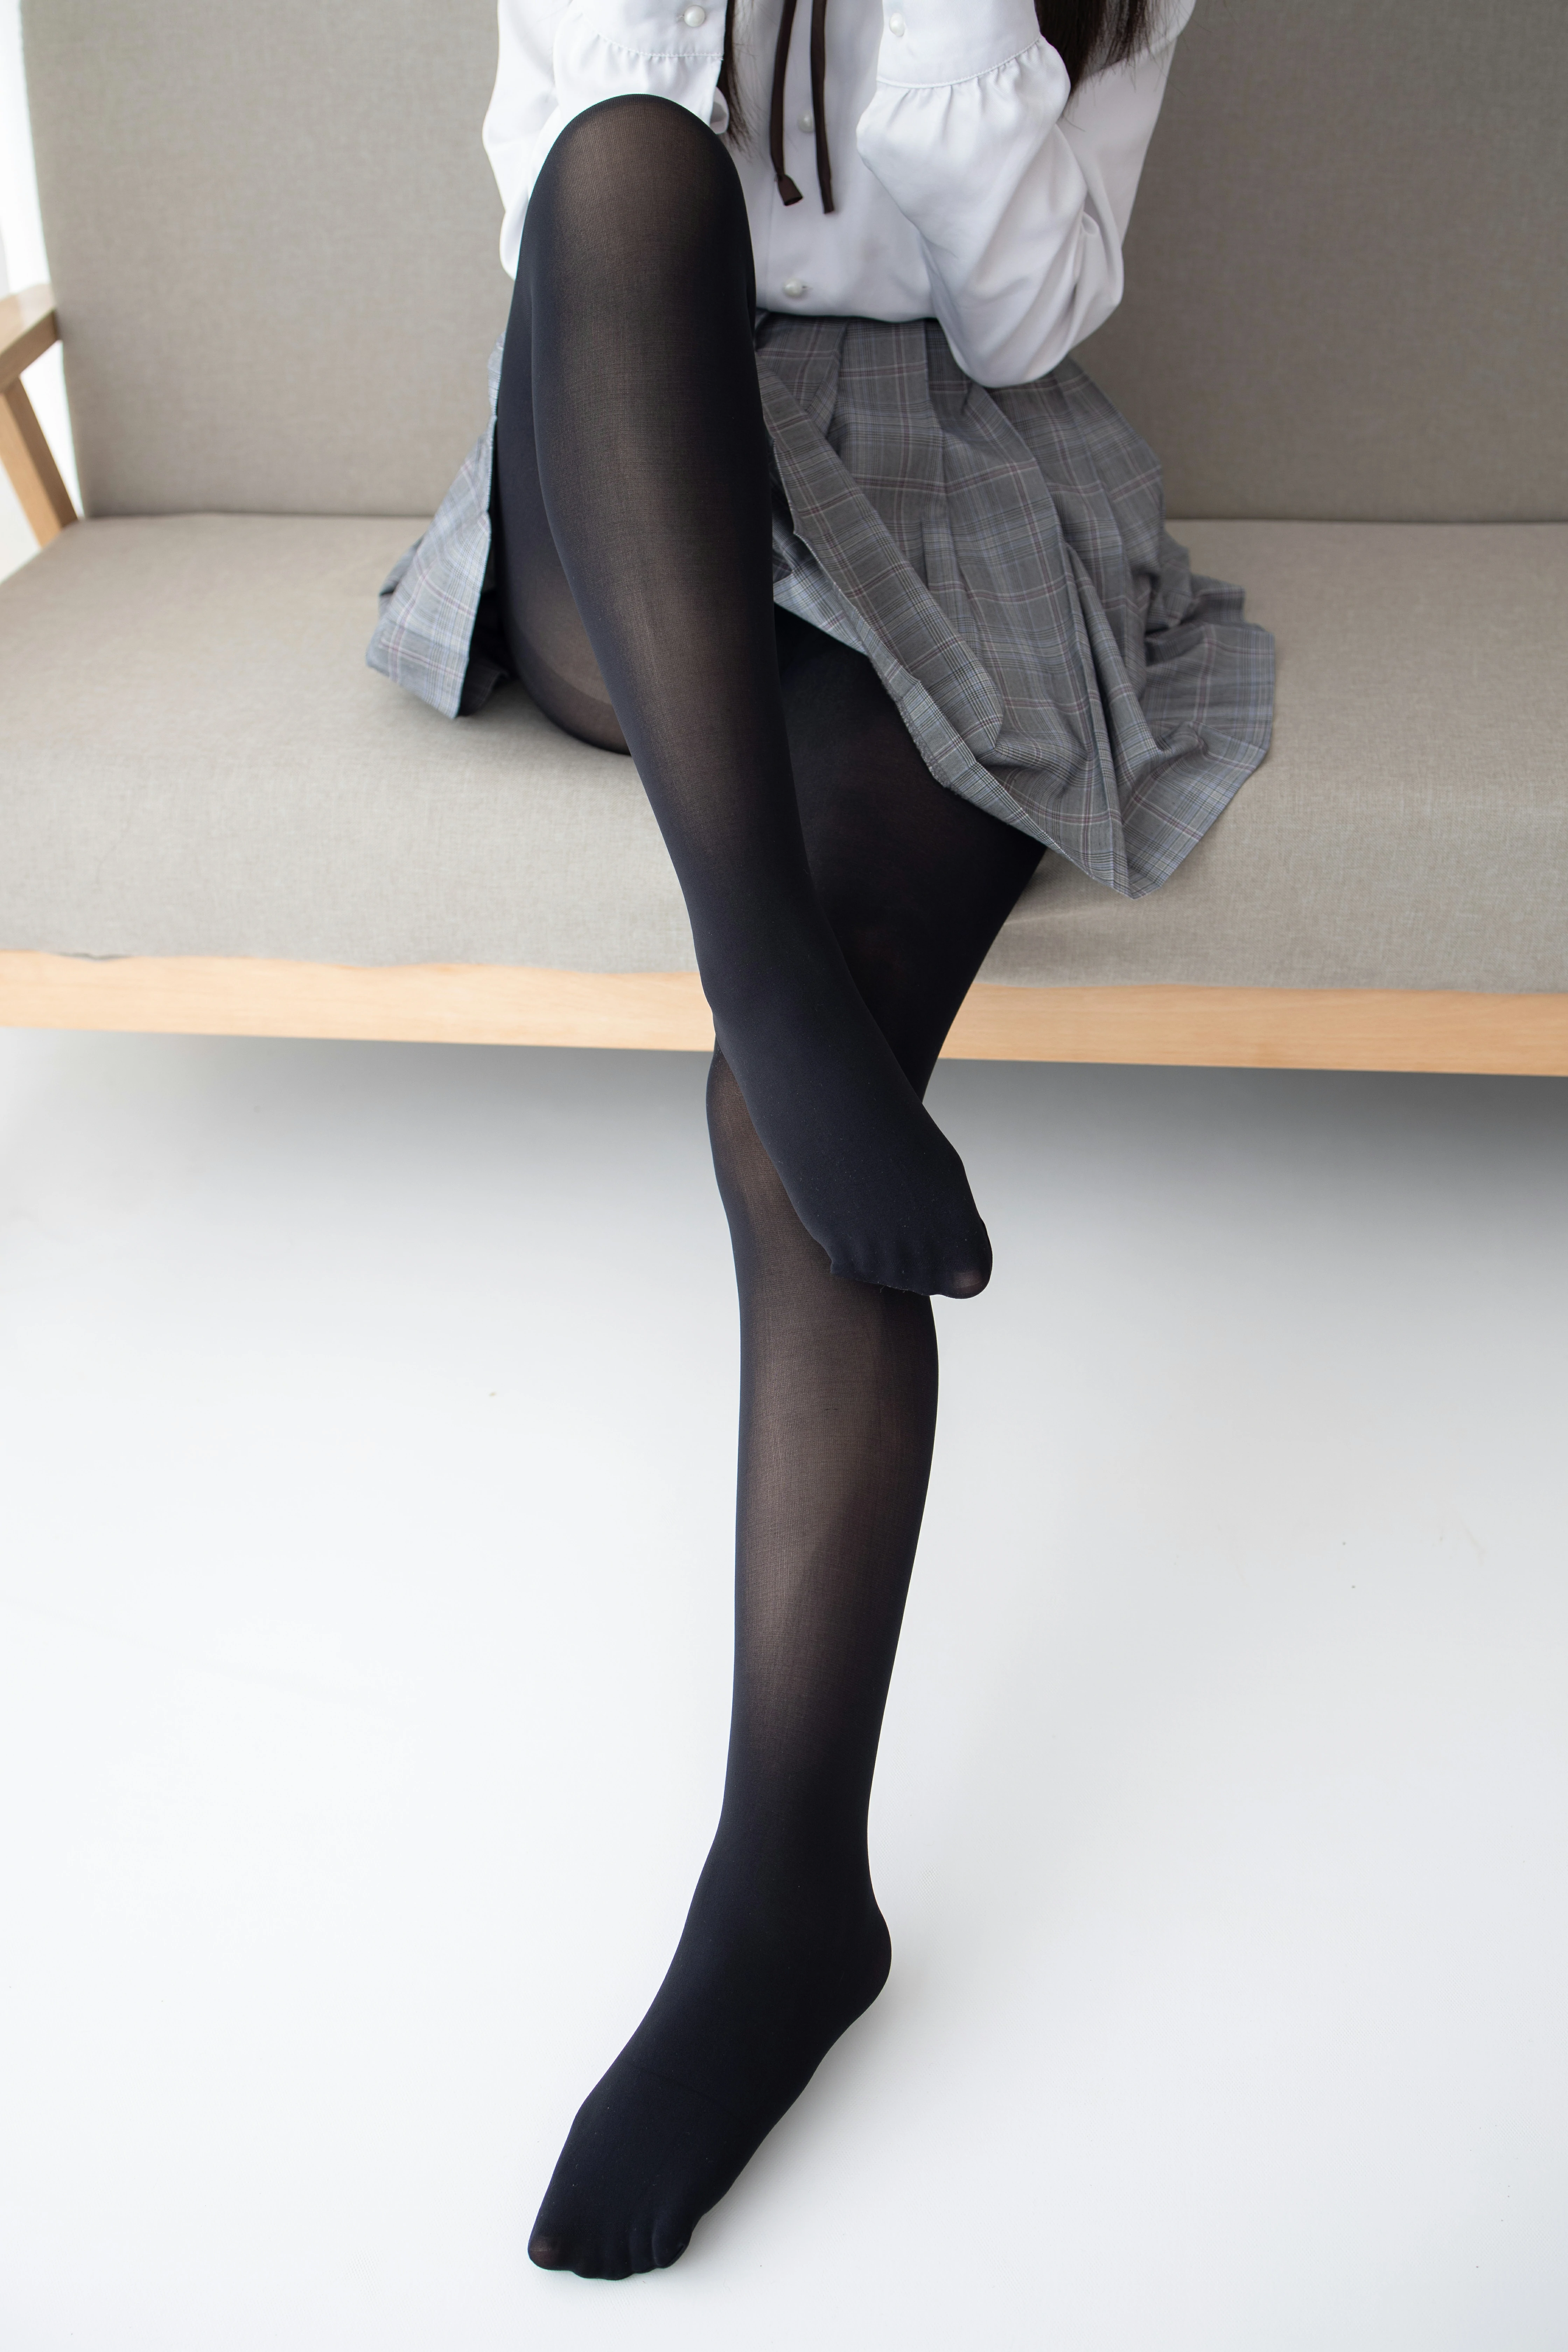 [森萝财团]JKFUN-016 黑丝 小夜 新人 日本高中女生制服与短裙加黑色丝袜美腿性感私房写真集,